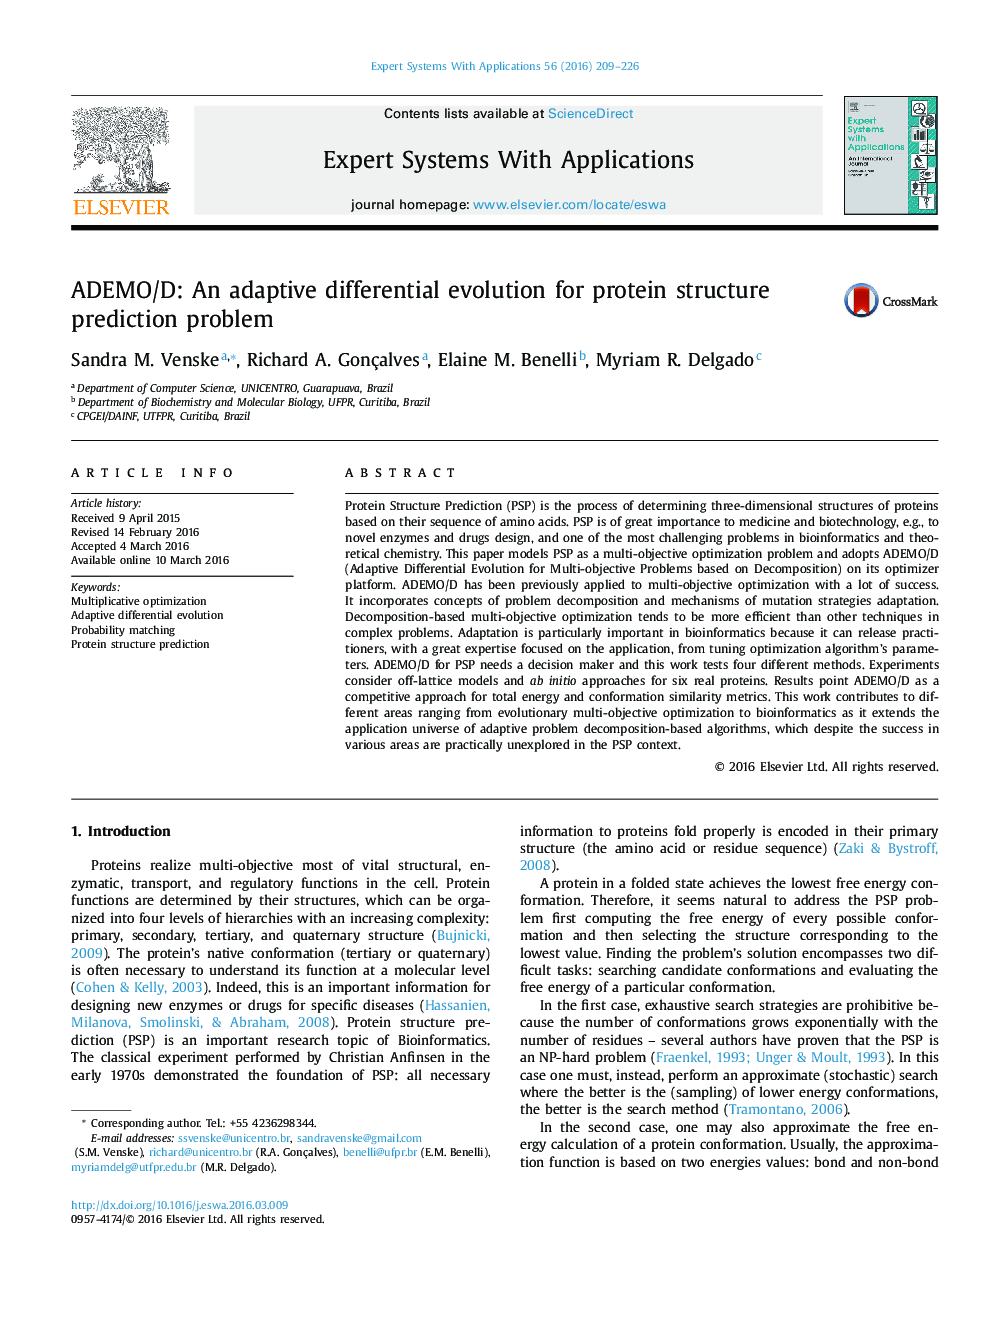 ADEMO / D: تکامل افتراقی تطبیقی برای مشکل پیش بینی ساختار پروتئین